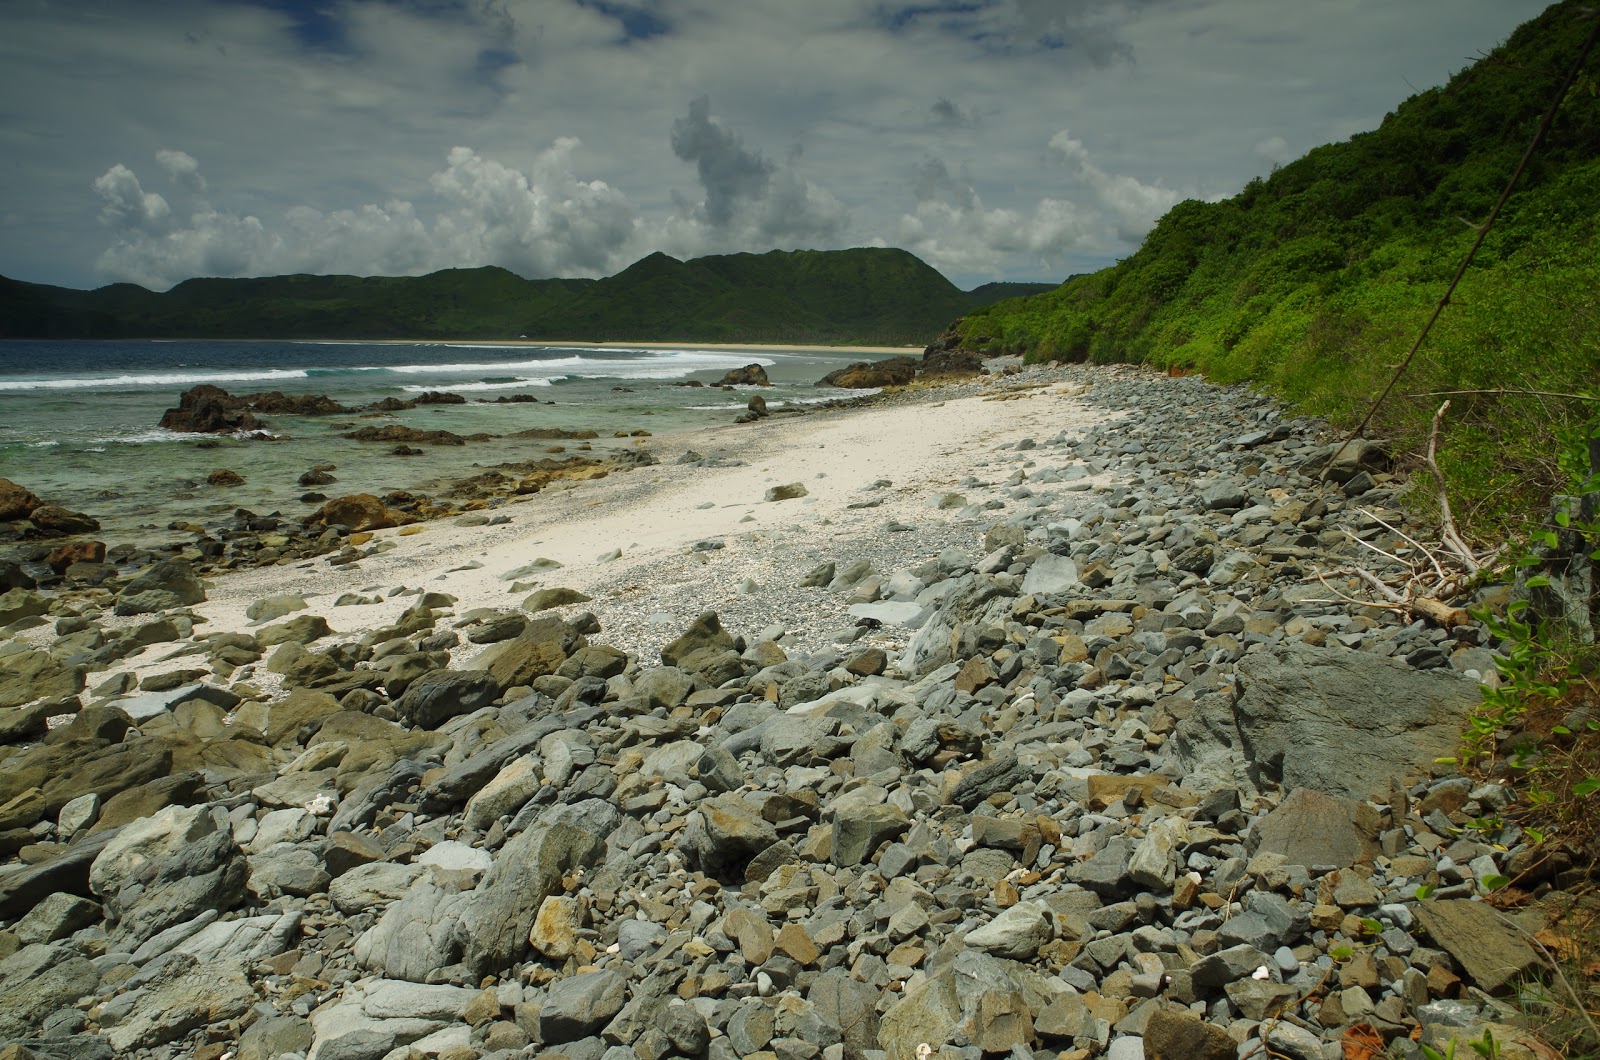 Batu Bereng Beach'in fotoğrafı parlak kum ve kayalar yüzey ile